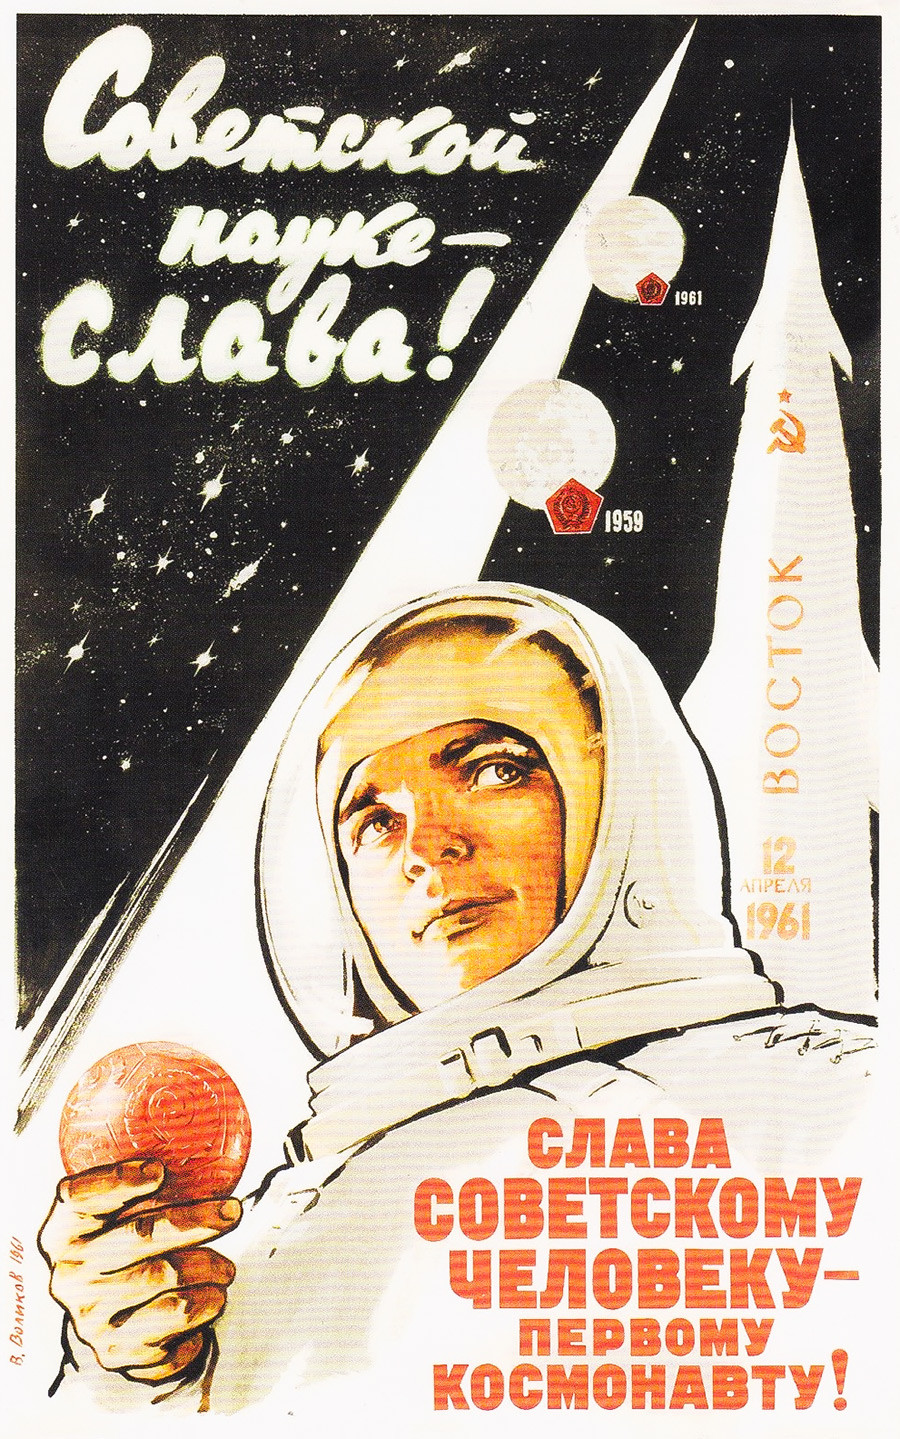 Ruhm der sowjetischen Wissenschaft! Ruhm dem sowjetischen Menschen - dem ersten Kosmonauten der Welt!